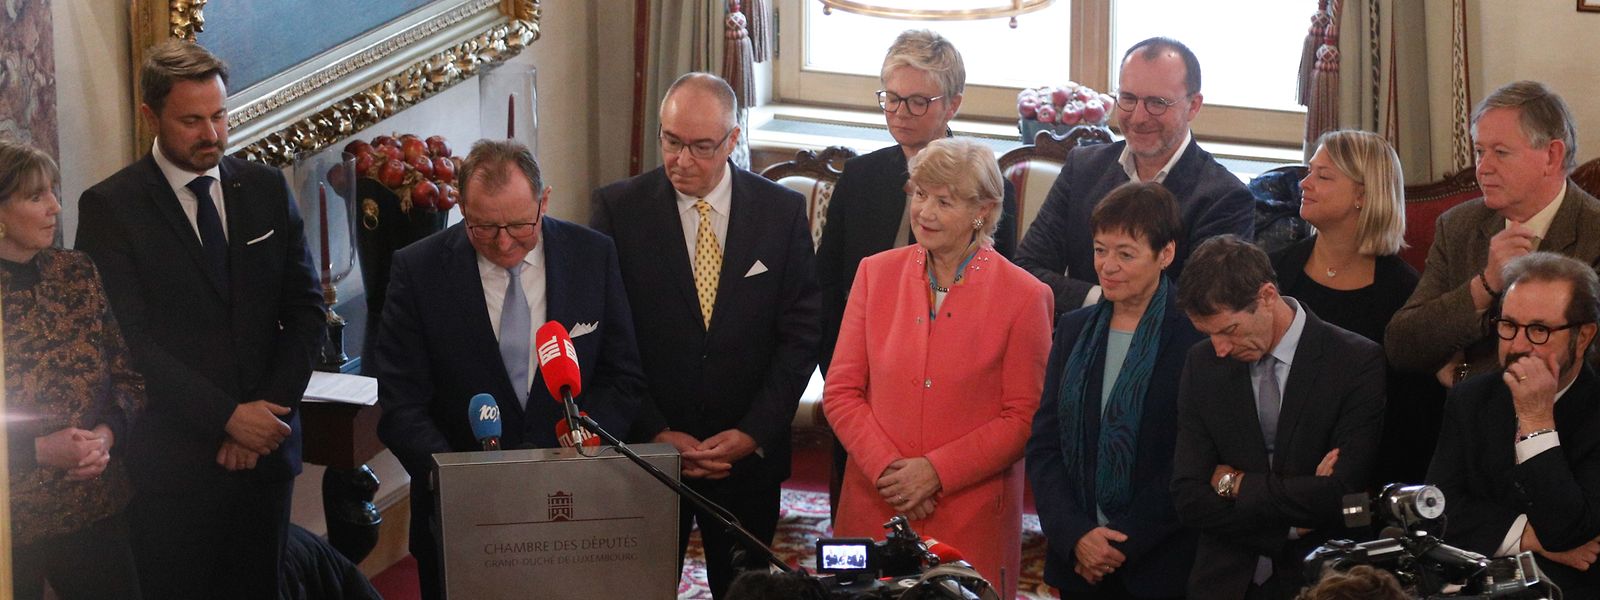 Entouré du Premier ministre et du secrétaire général de la Chambre, Fernand Etgen a présenté les travaux parlementaires 2020.